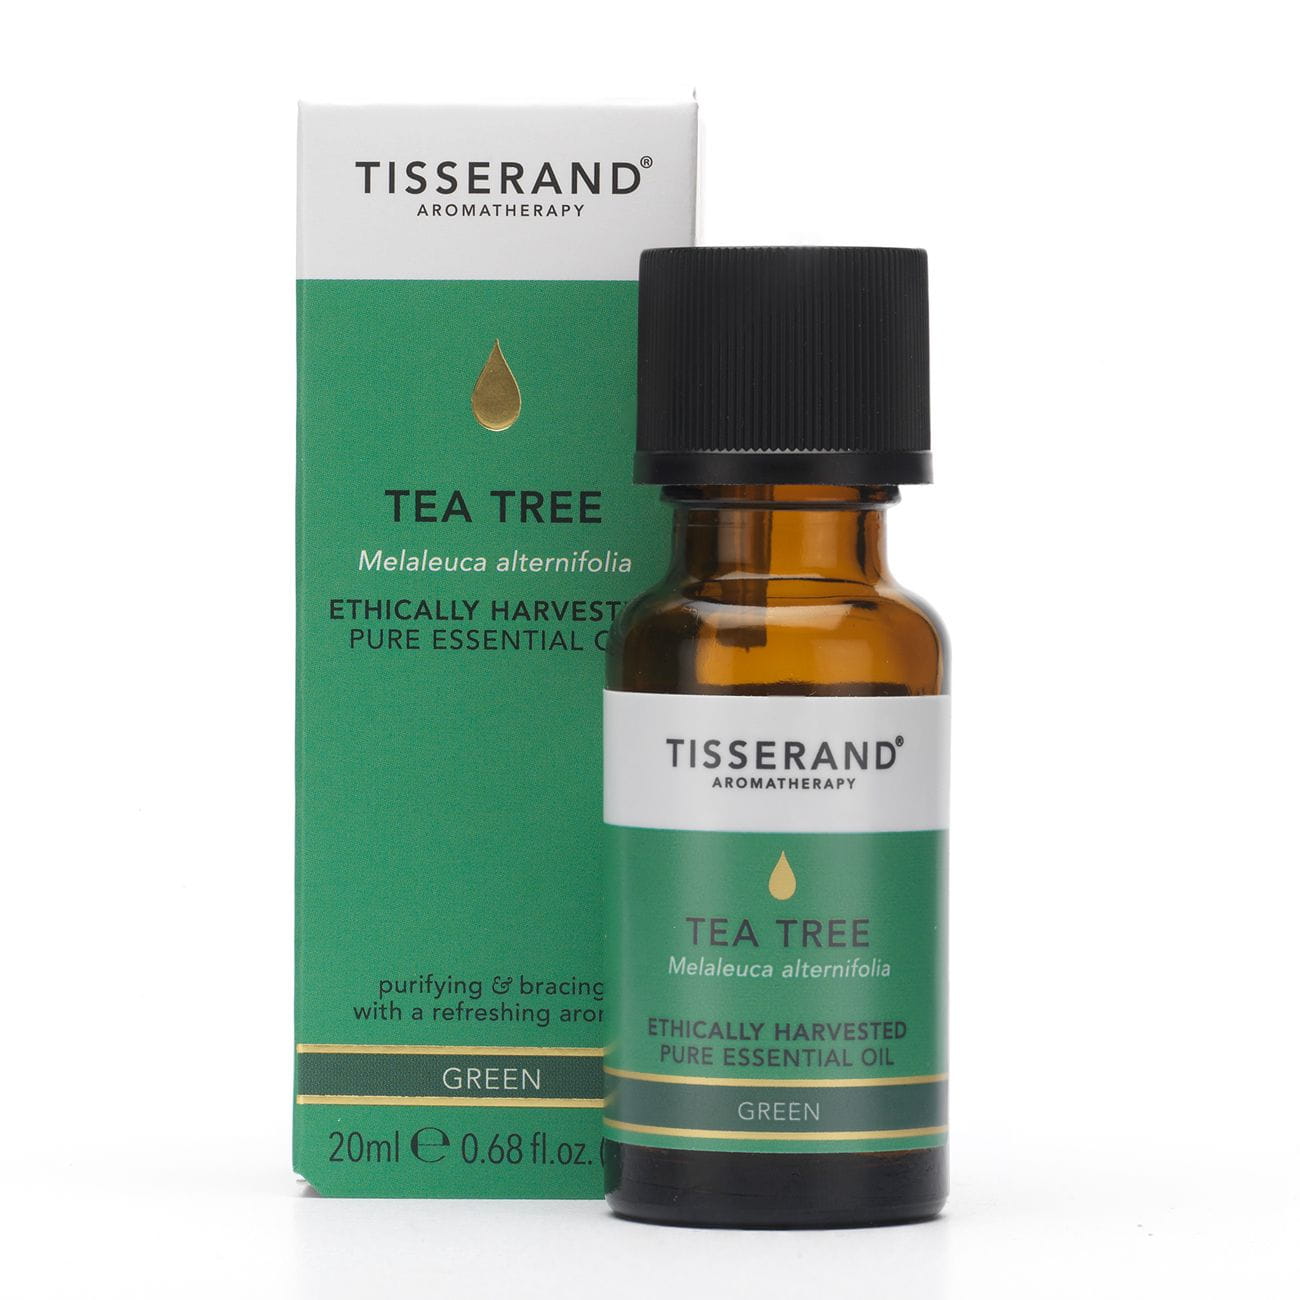 Tisserand Aromatherapy Tea Tree Ethically Harvested Drzewo Herbaciane 20 ml Tisserand Aromatherapy